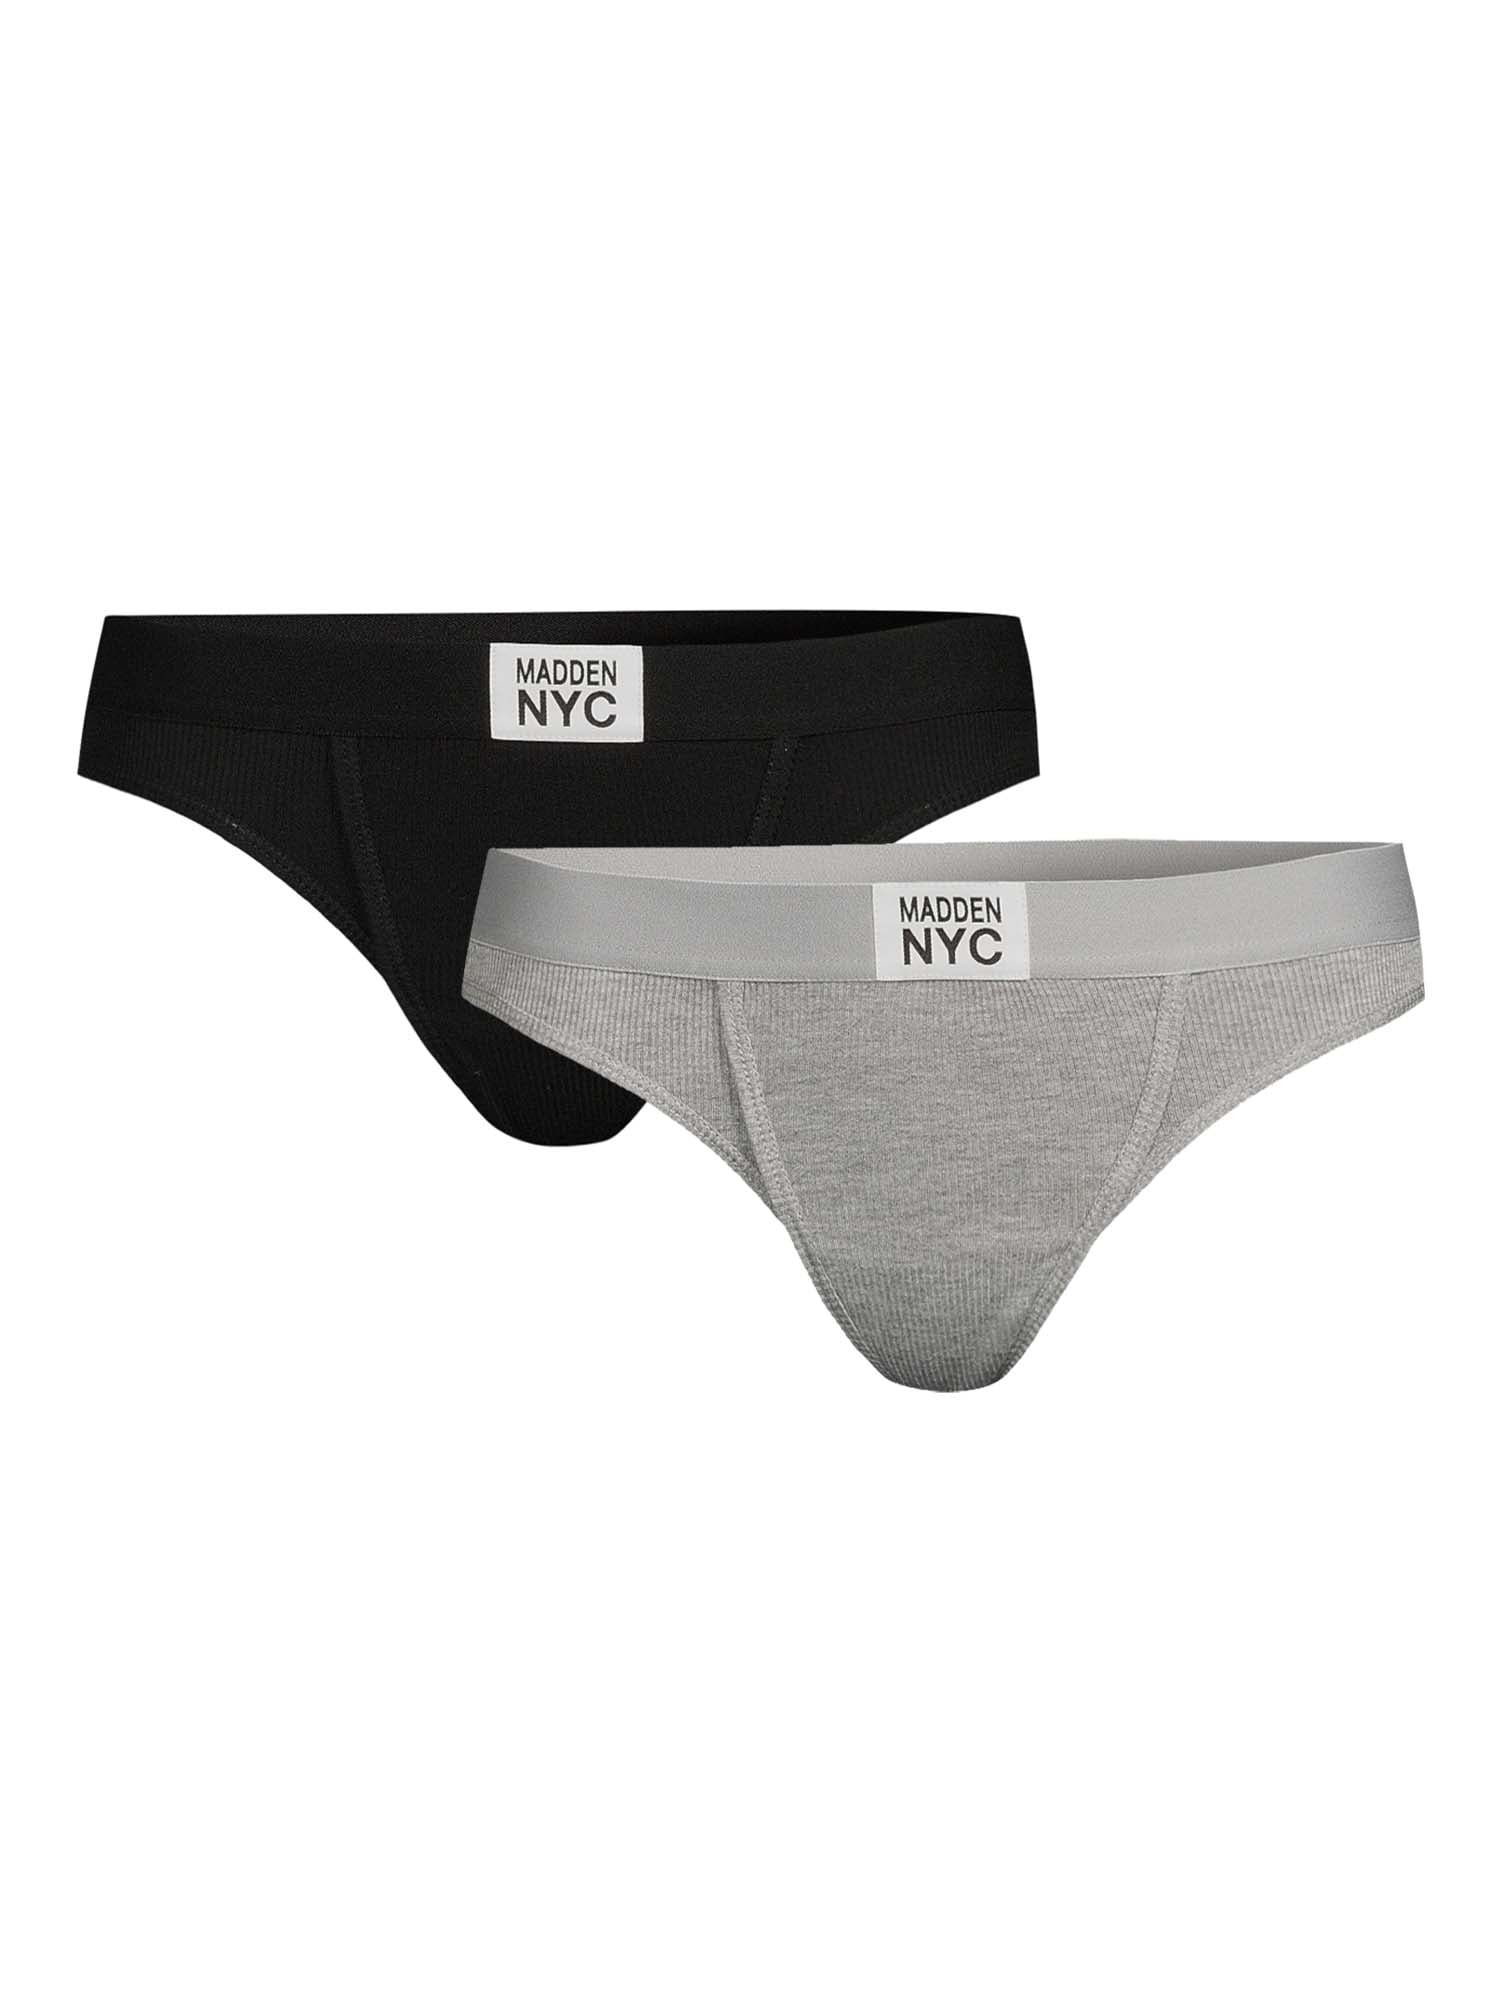 Madden NYC Women's Ribbed Thong Panties, 2-Pack 